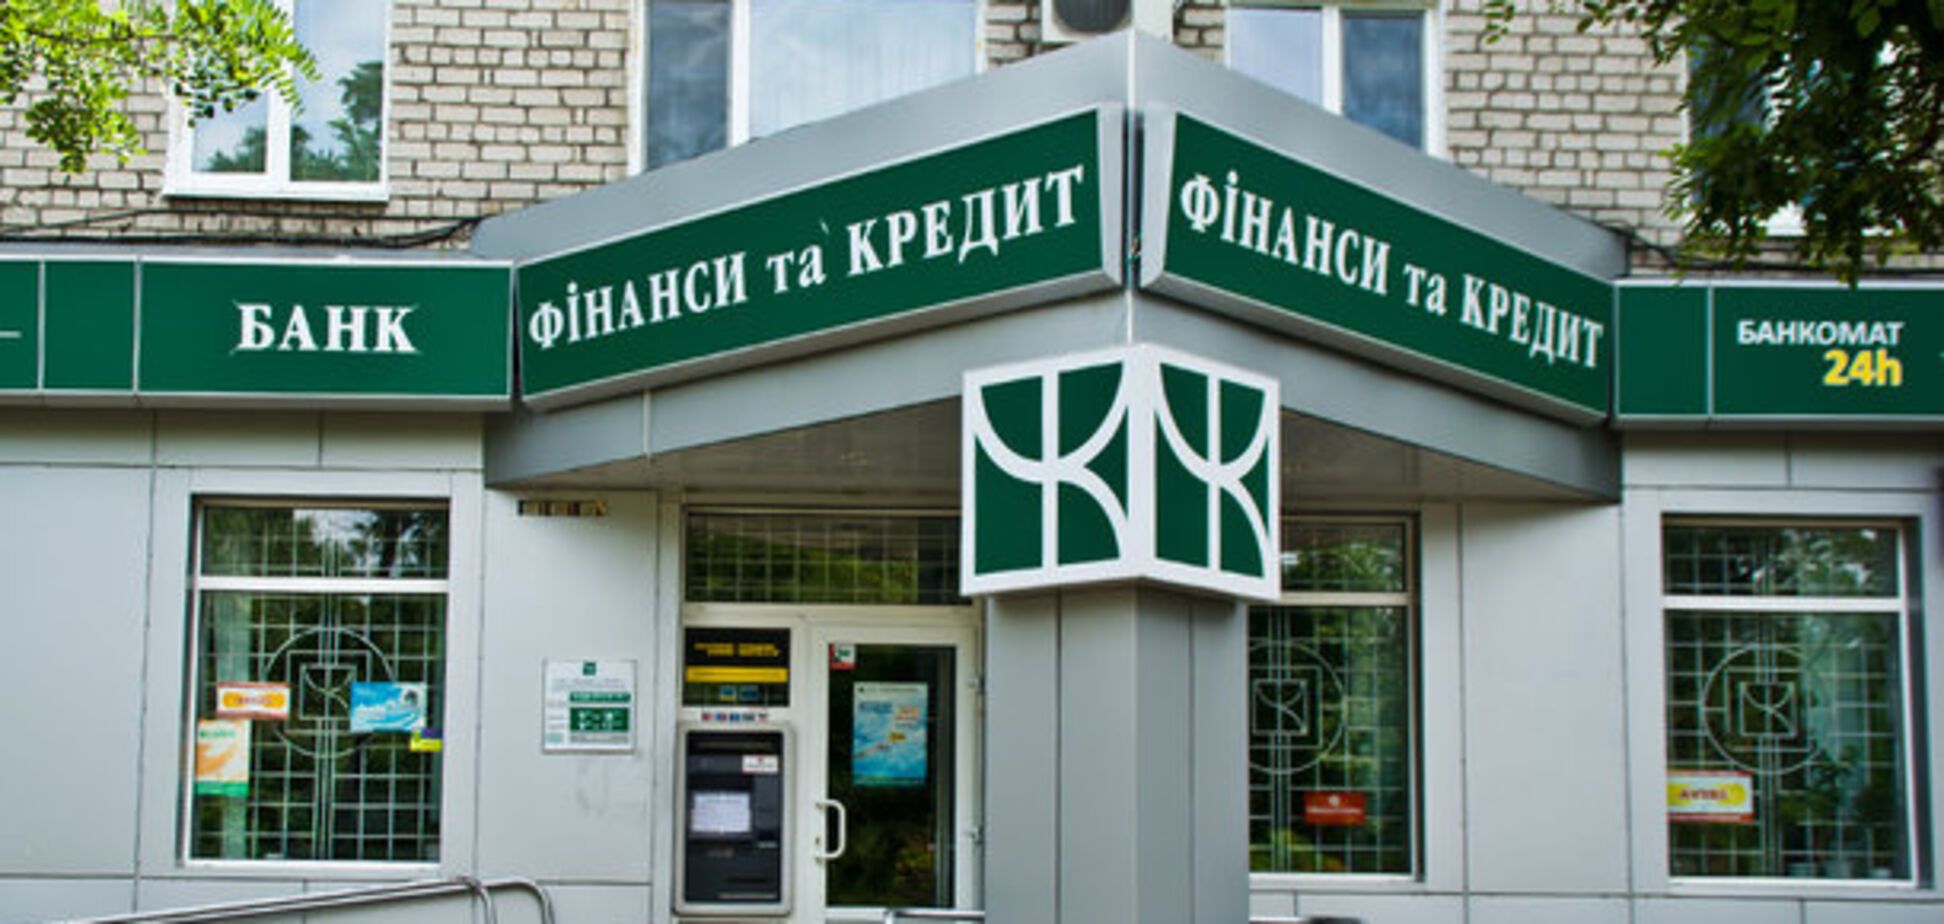 По обвинению Жеваго: в России задержали бывшего топ-менеджера банка 'Финансы и кредит'